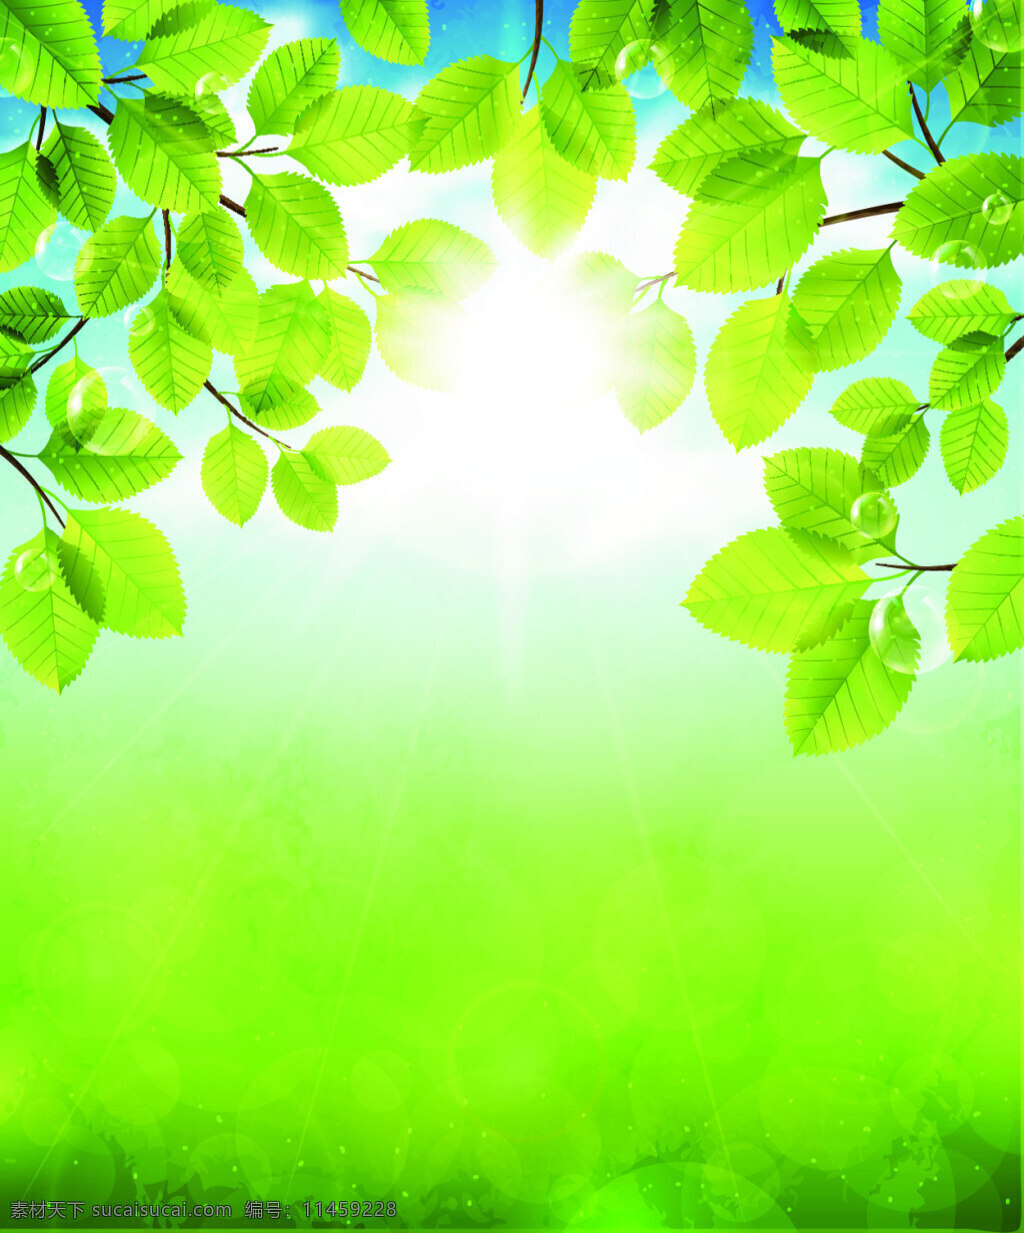 树叶 绿色 背景 春天 风景 矢量 环保 自然 背景素材 创意设计 源文件 生机 广告背景 平面设计素材